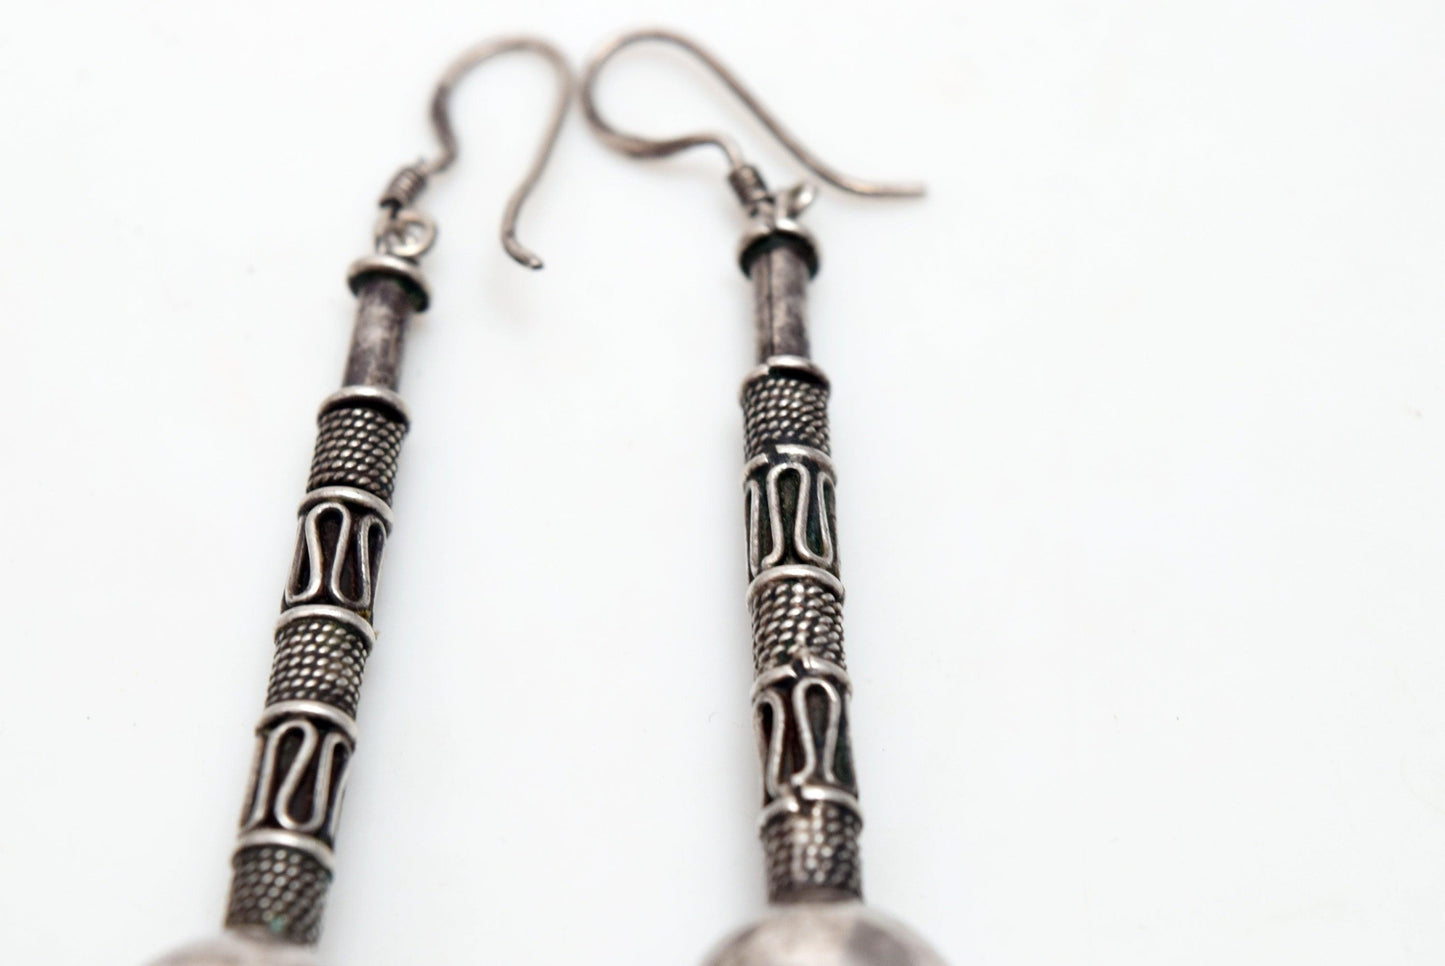 Bali silver earrings